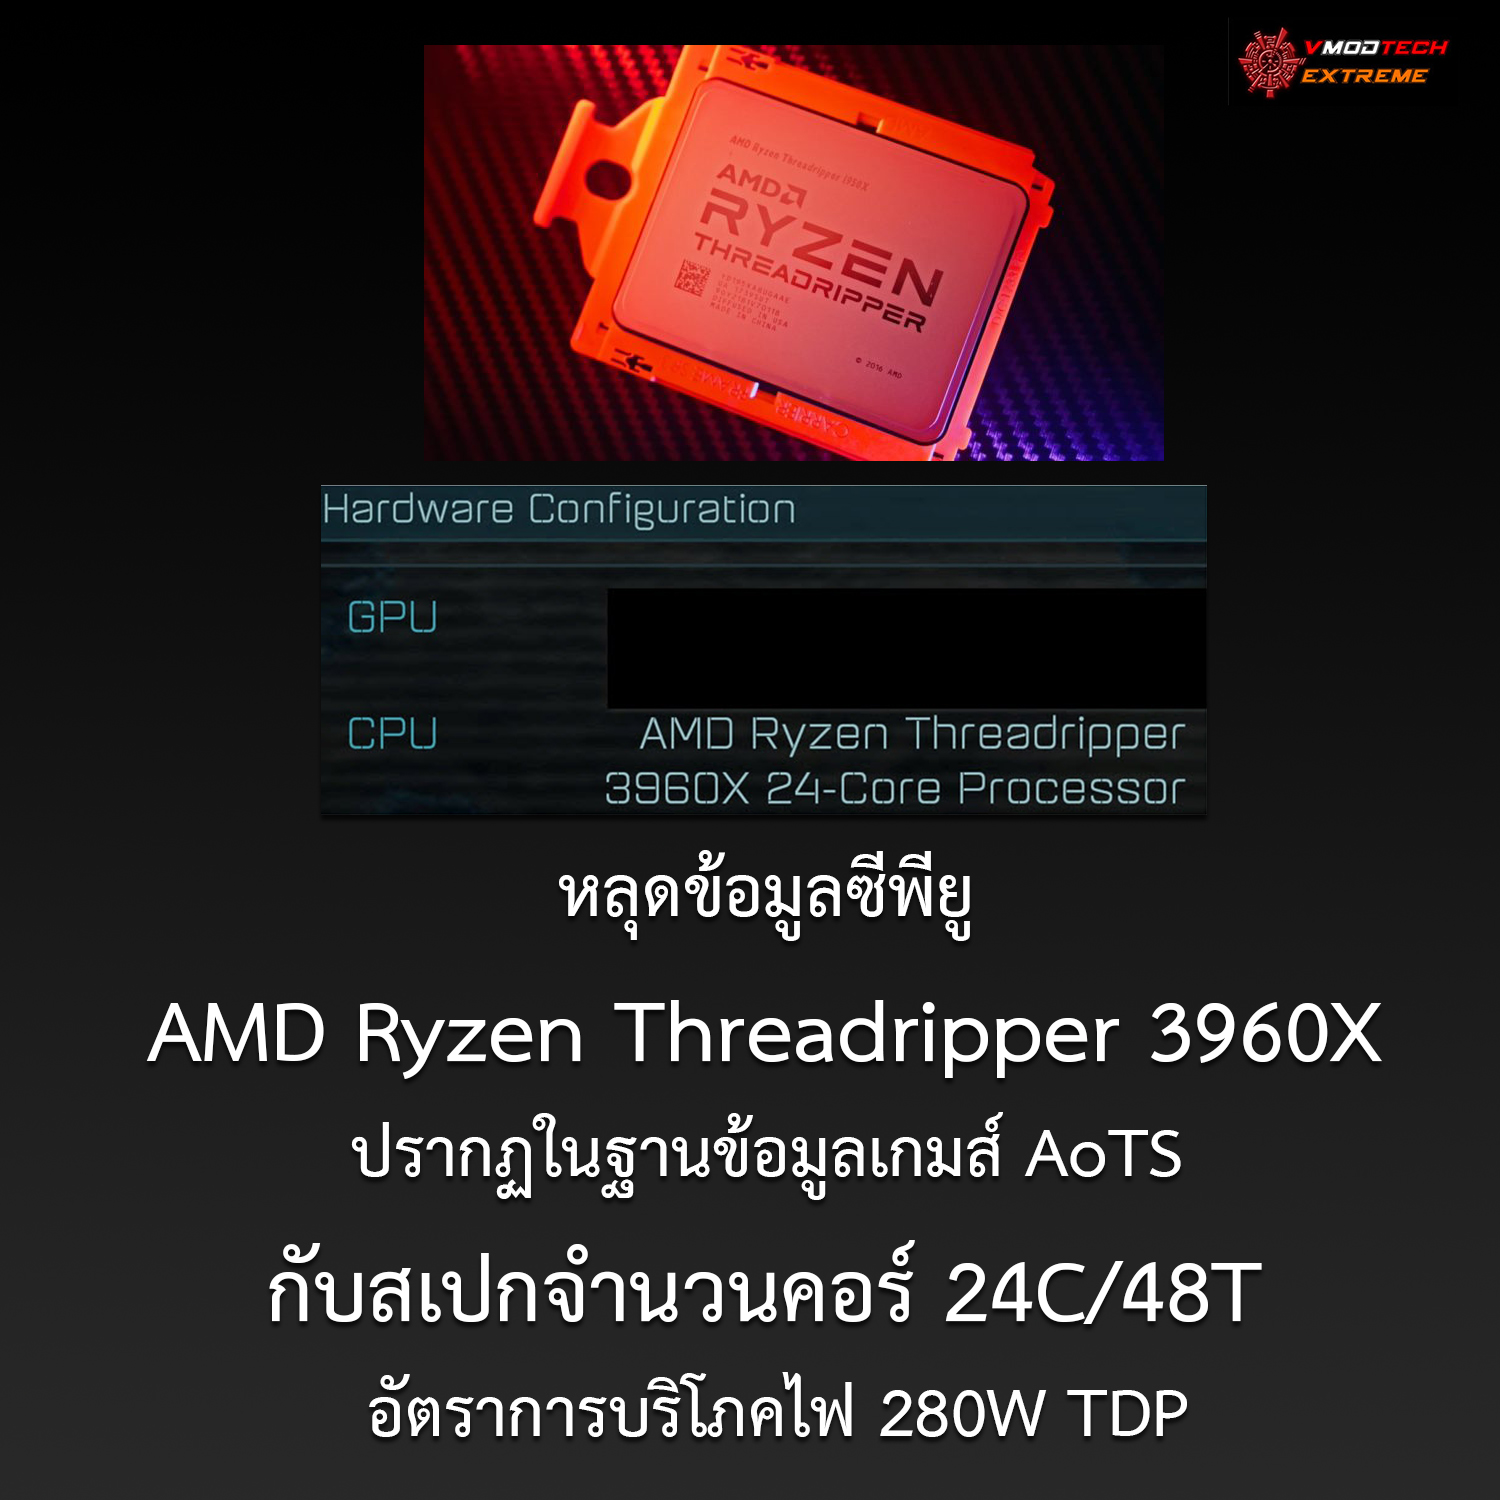 หลุดข้อมูลซีพียู AMD Ryzen Threadripper 3960X ปรากฏในฐานข้อมูลเกมส์ AoTS กับสเปกจำนวนคอร์ 24C/48T อัตราการบริโภคไฟ 280W TDP